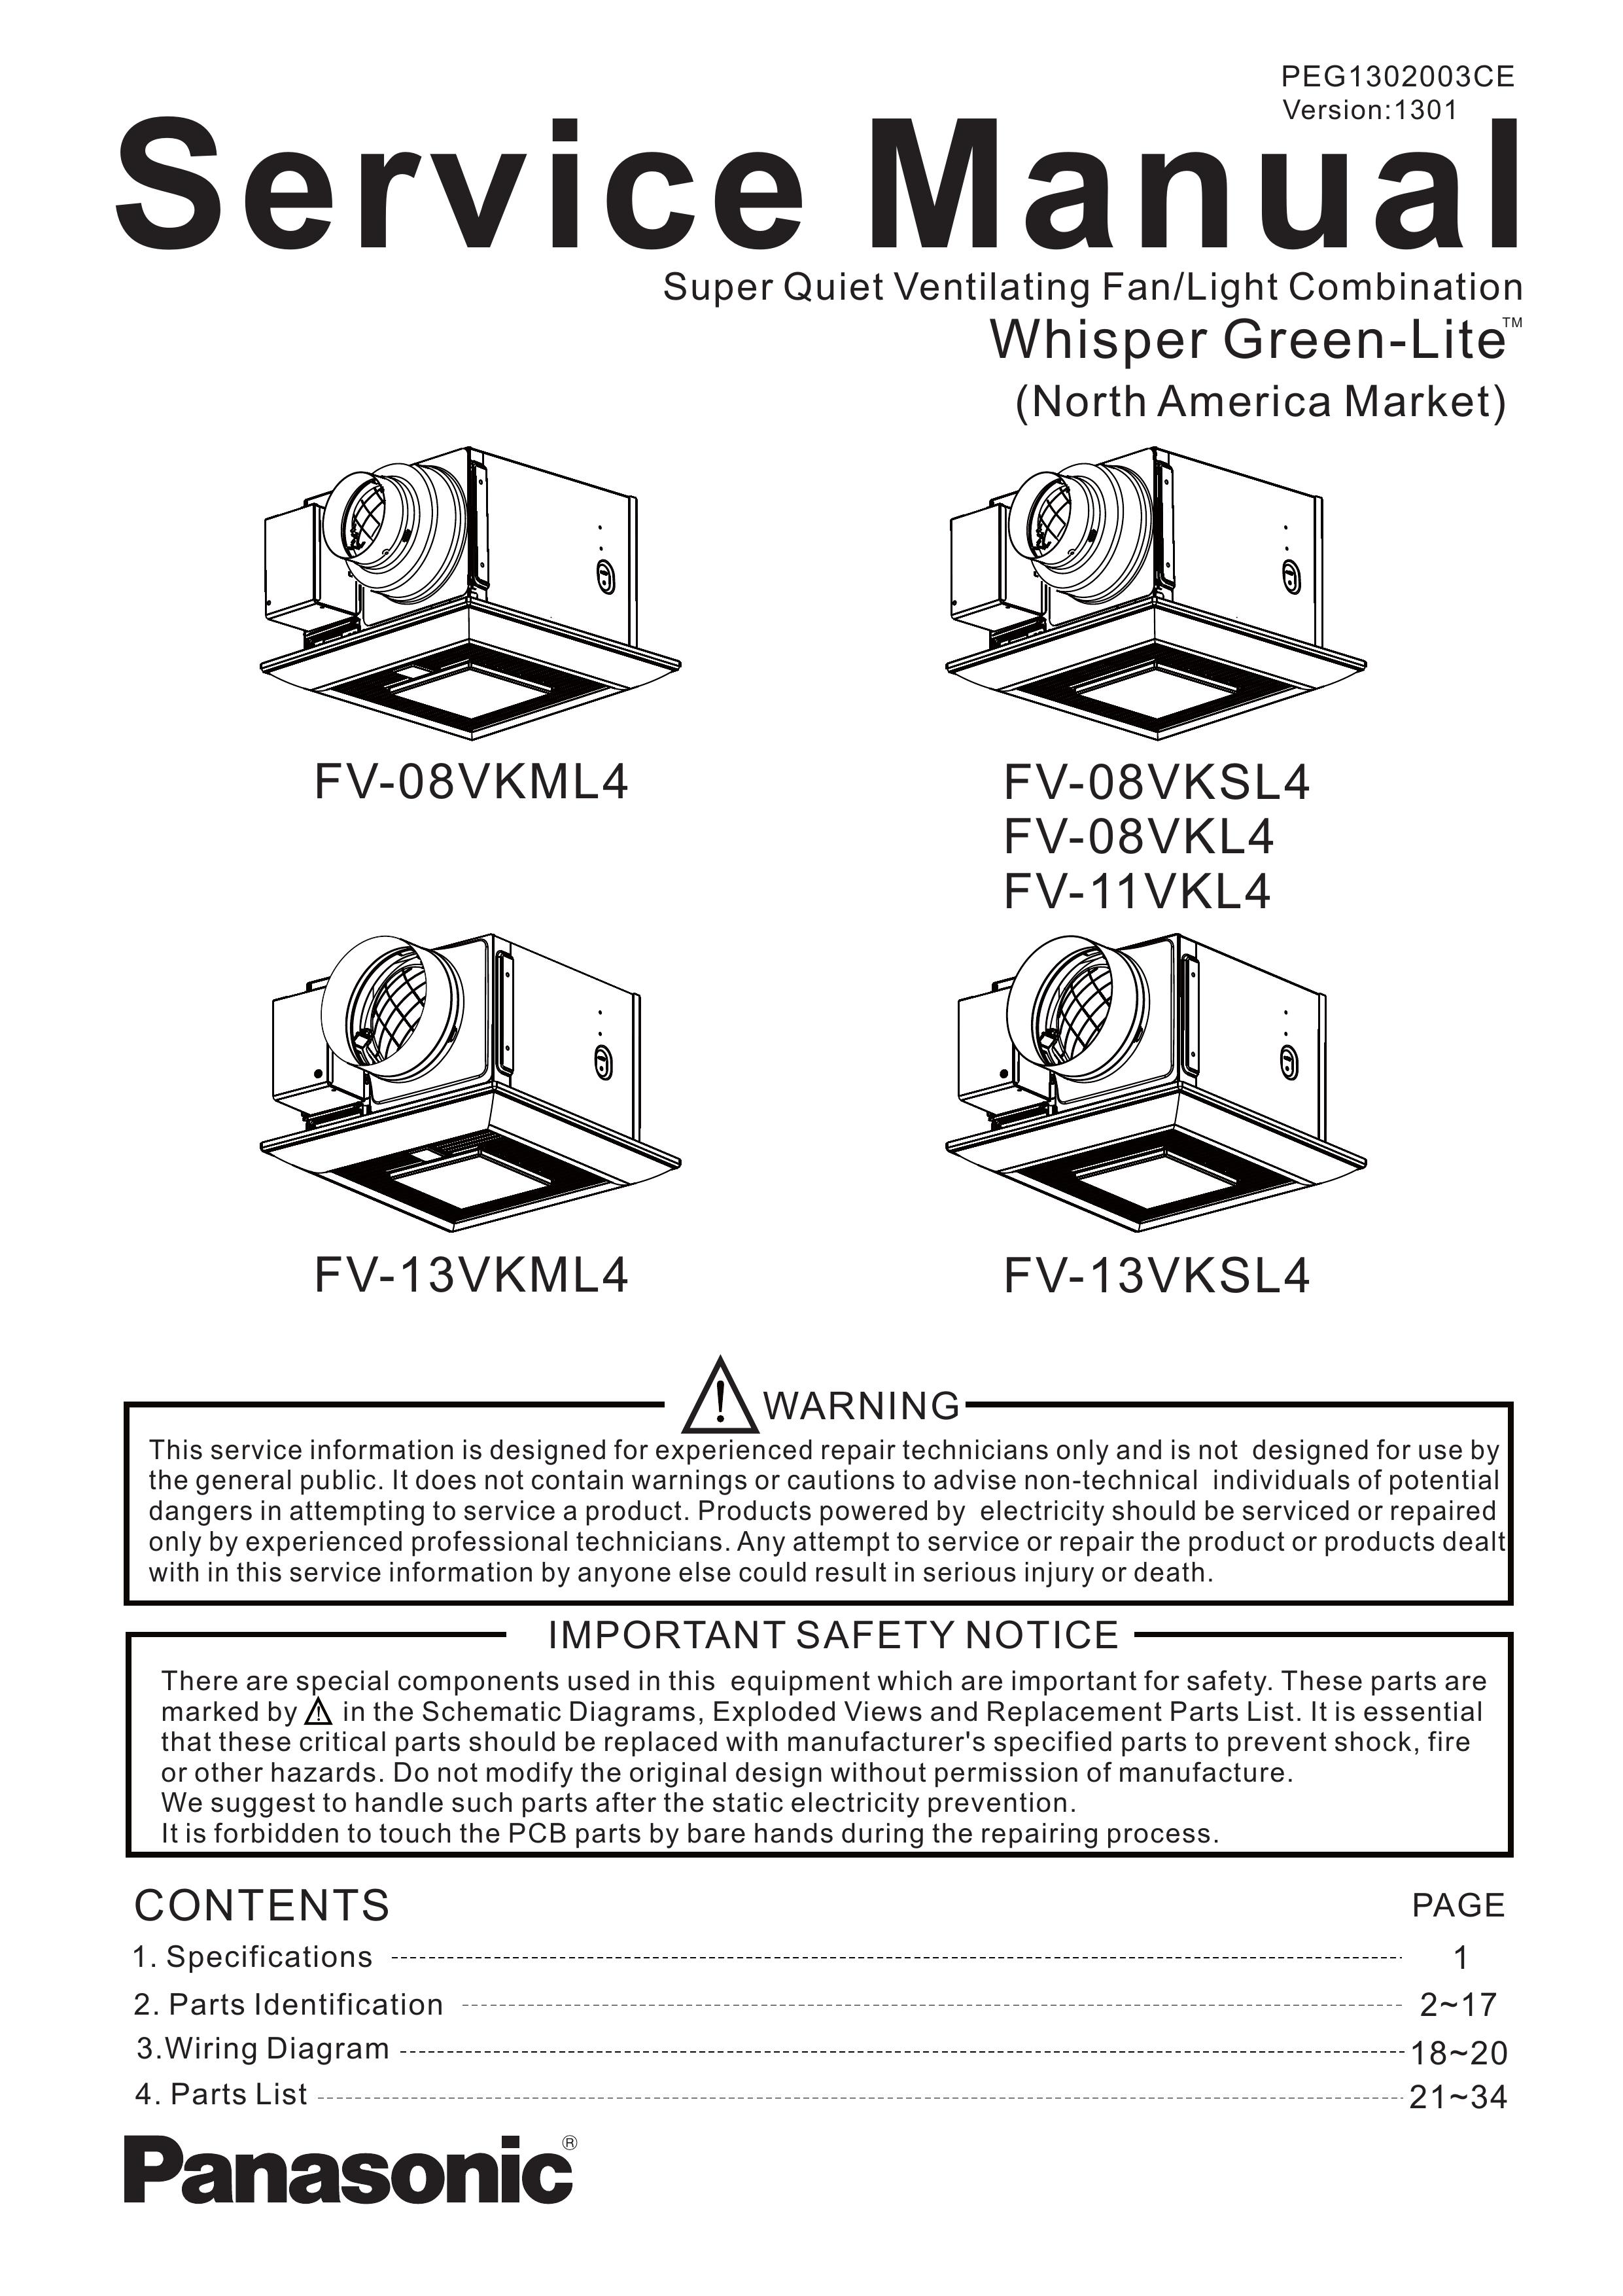 Panasonic FV-13VKSL4 Ventilation Hood User Manual